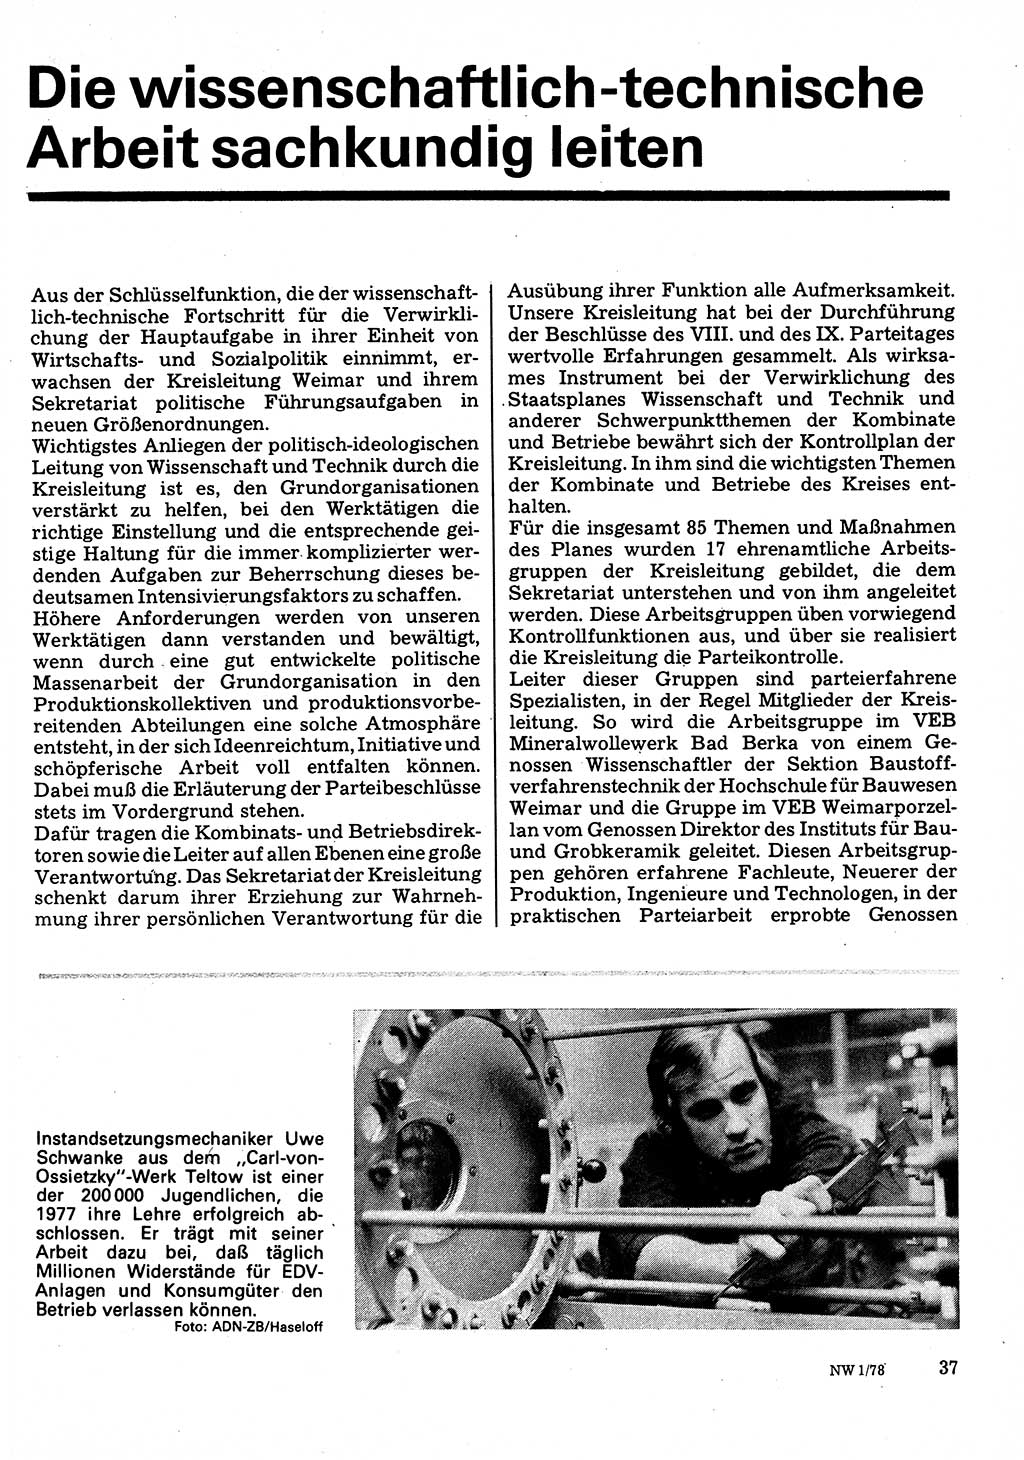 Neuer Weg (NW), Organ des Zentralkomitees (ZK) der SED (Sozialistische Einheitspartei Deutschlands) für Fragen des Parteilebens, 33. Jahrgang [Deutsche Demokratische Republik (DDR)] 1978, Seite 37 (NW ZK SED DDR 1978, S. 37)